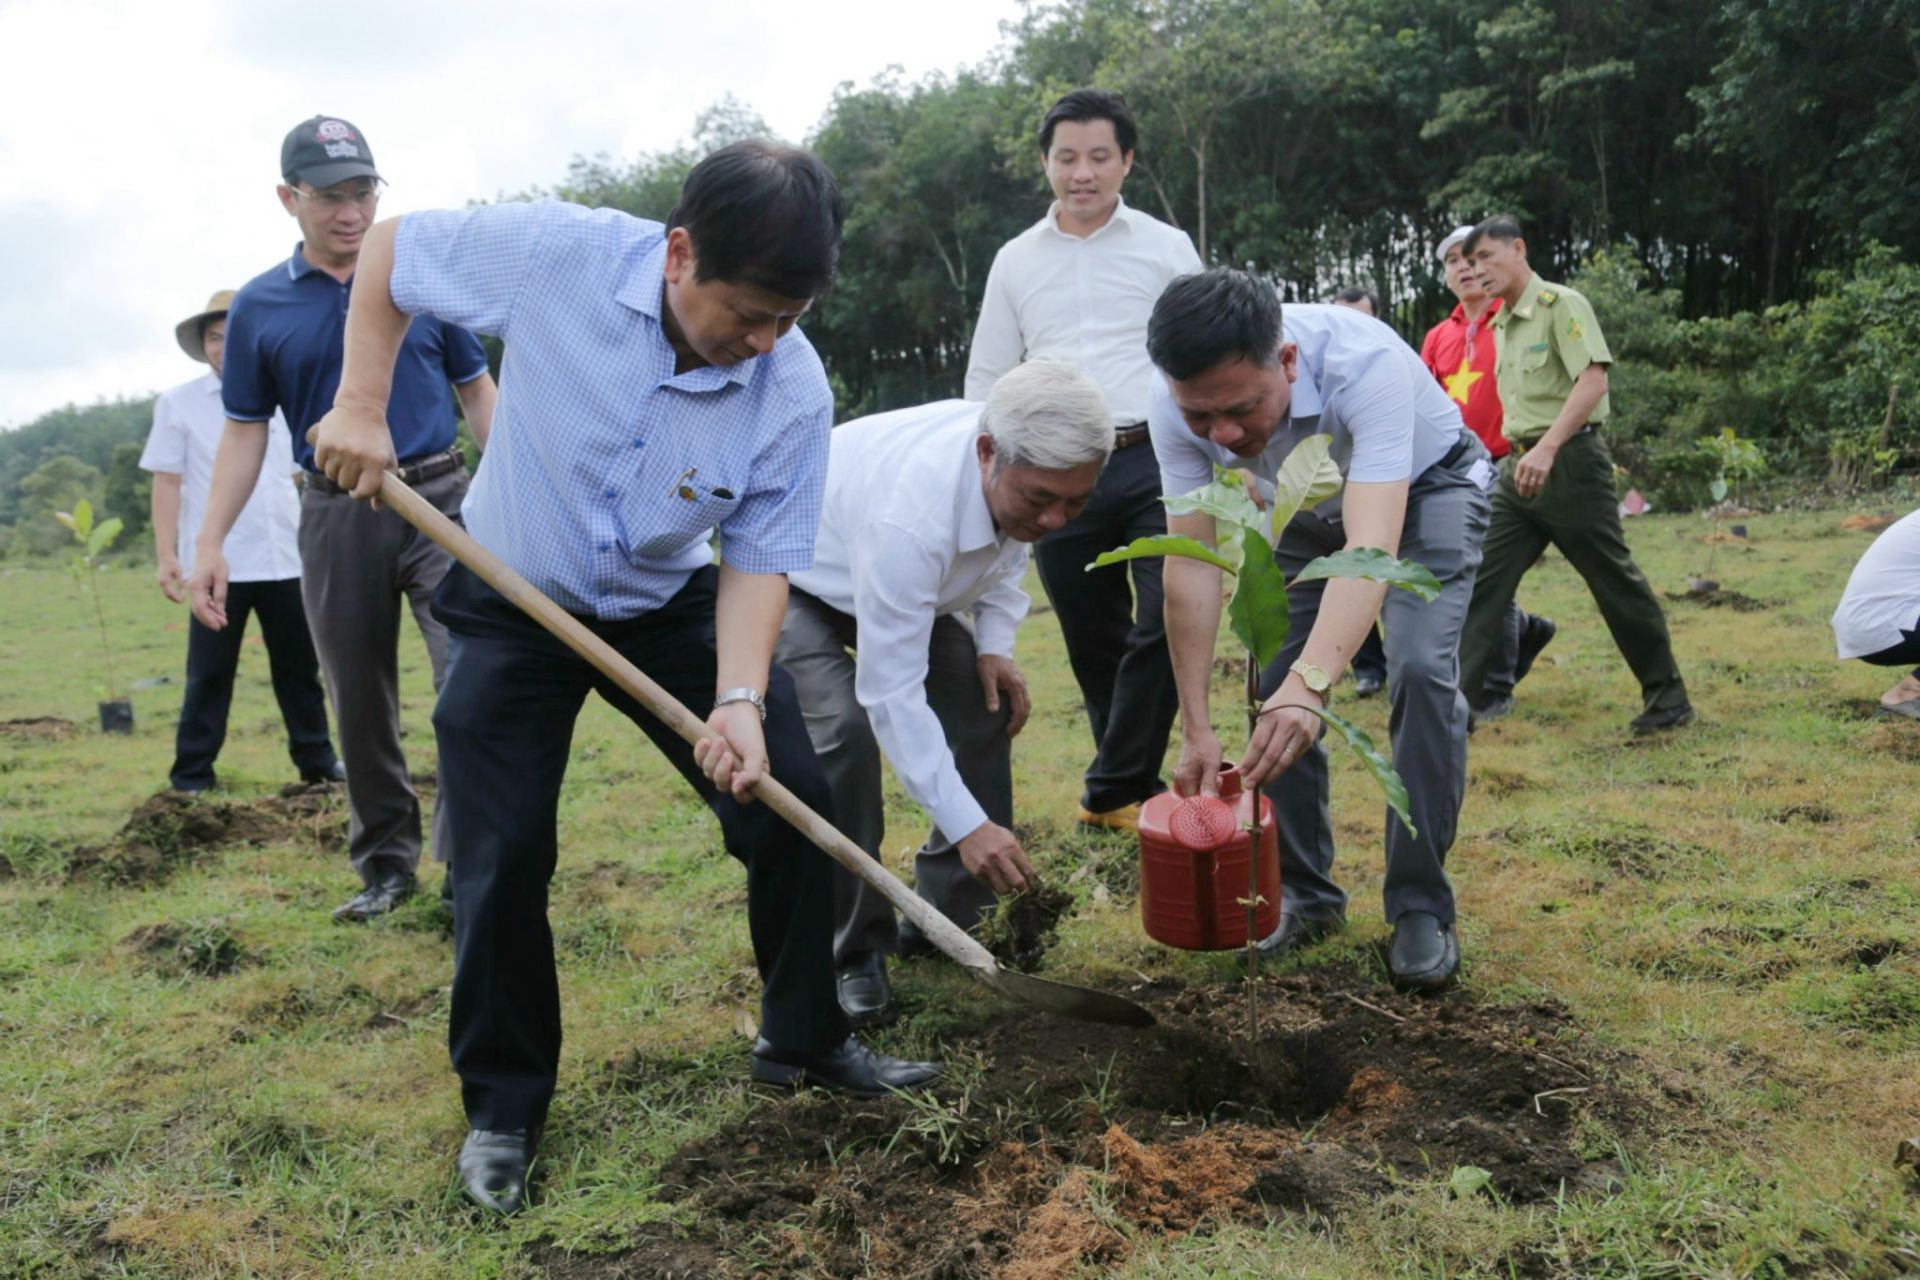 Nhà báo Trần Trọng Dũng - Phó Chủ tịch Hội Nhà báo Việt Nam và nhà báo Nguyễn Ngọc Hồi - Phó giám đốc VTV9 tham gia trồng cây tại tỉnh Bình Phước.